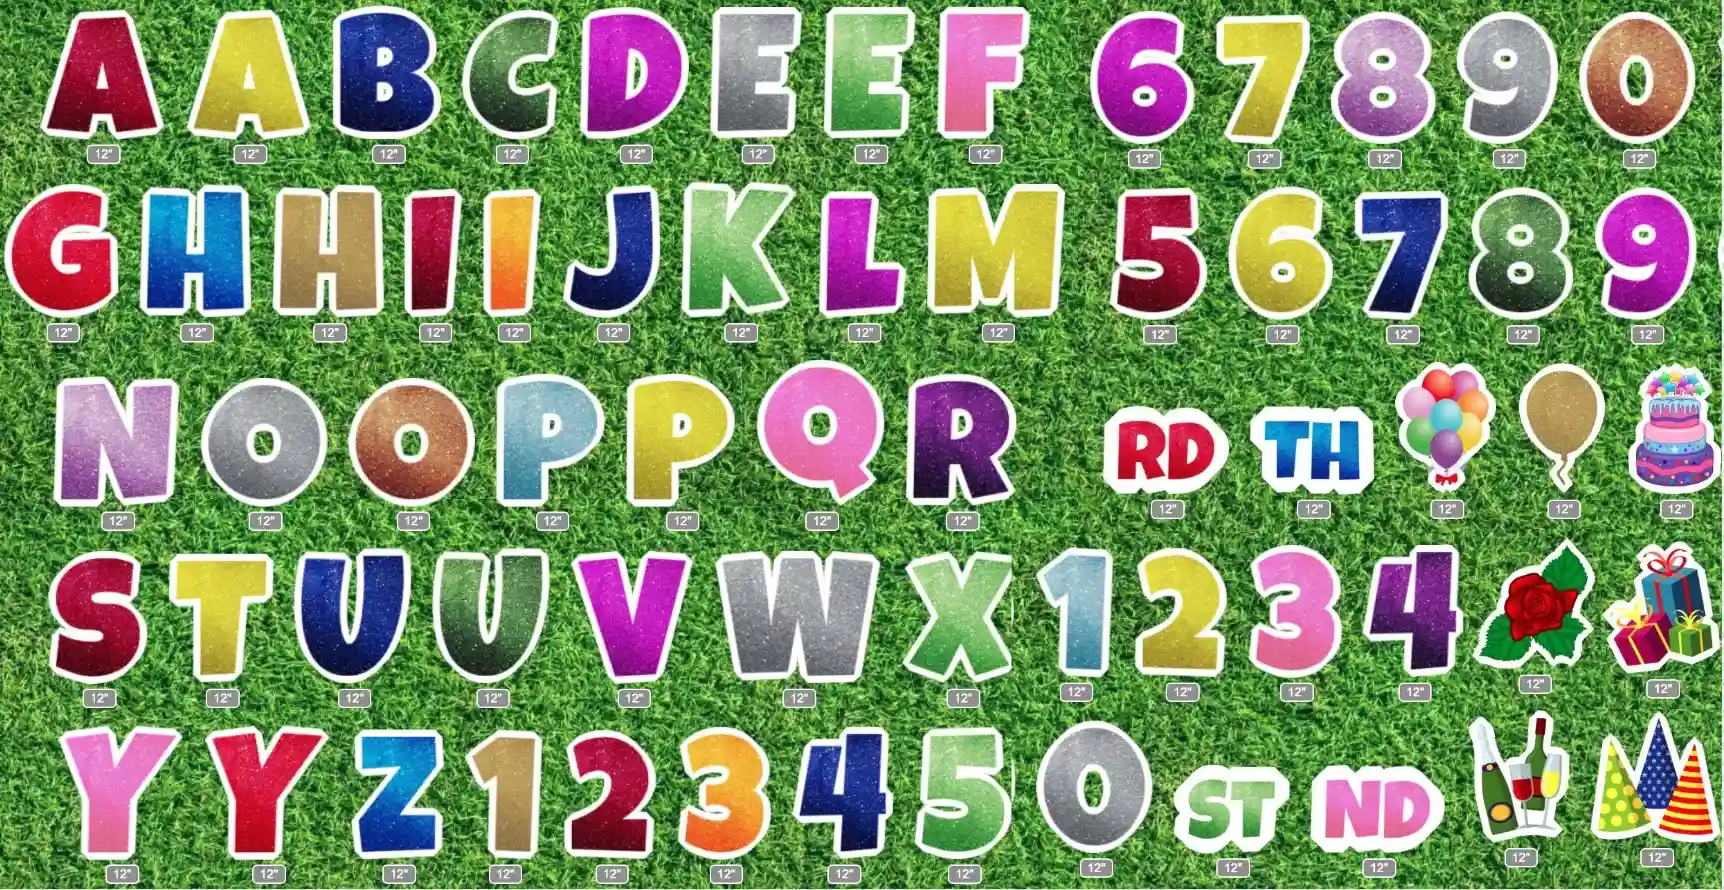 glitter alphabet letter set